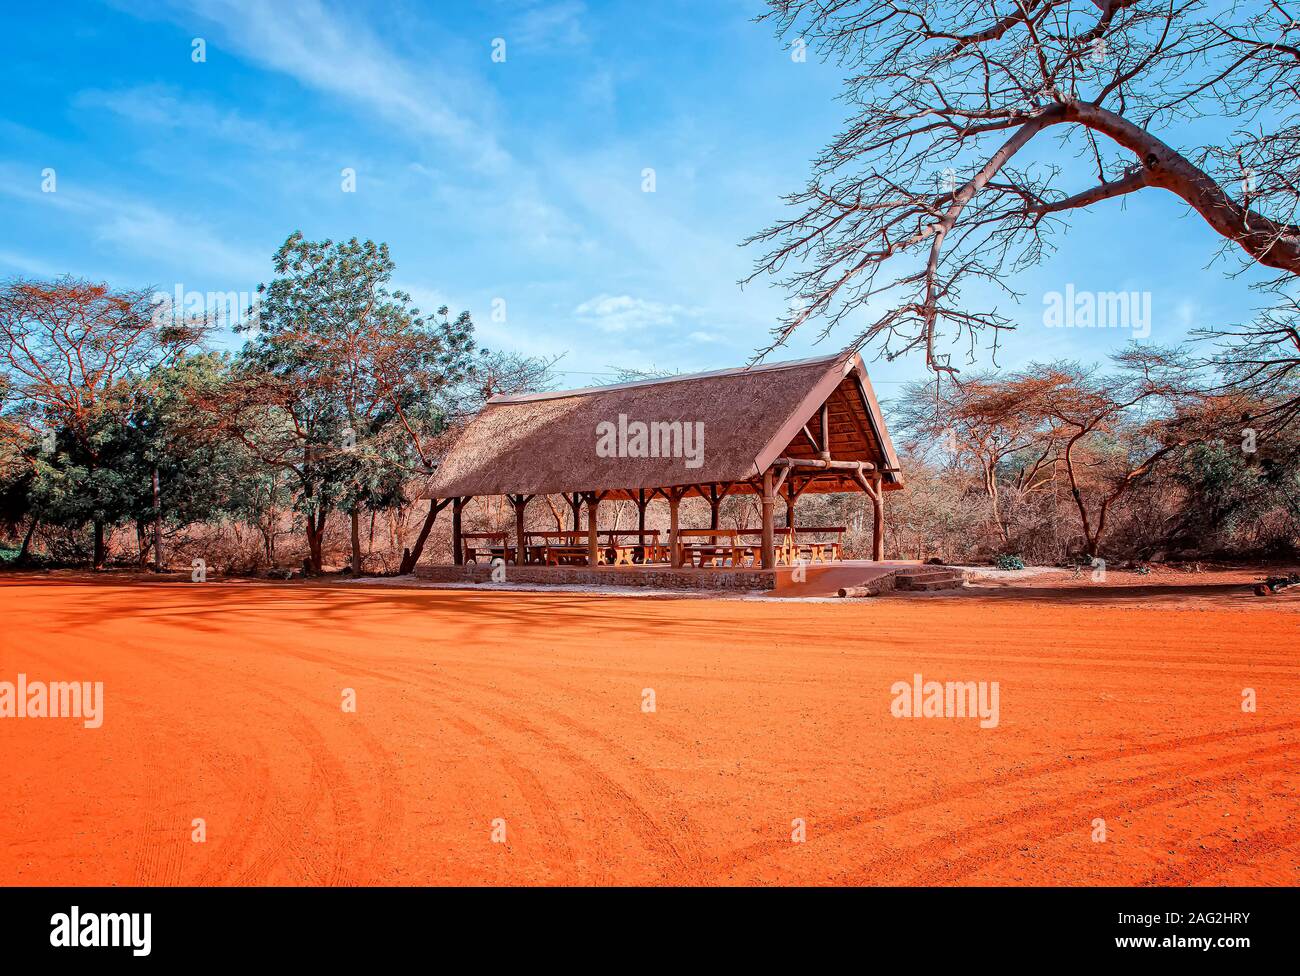 Aire de repos en réserve de Bandia (Sénégal). Il s'agit d'un parc du safari en Afrique de l'Ouest. Il y a du sable rouge. Banque D'Images